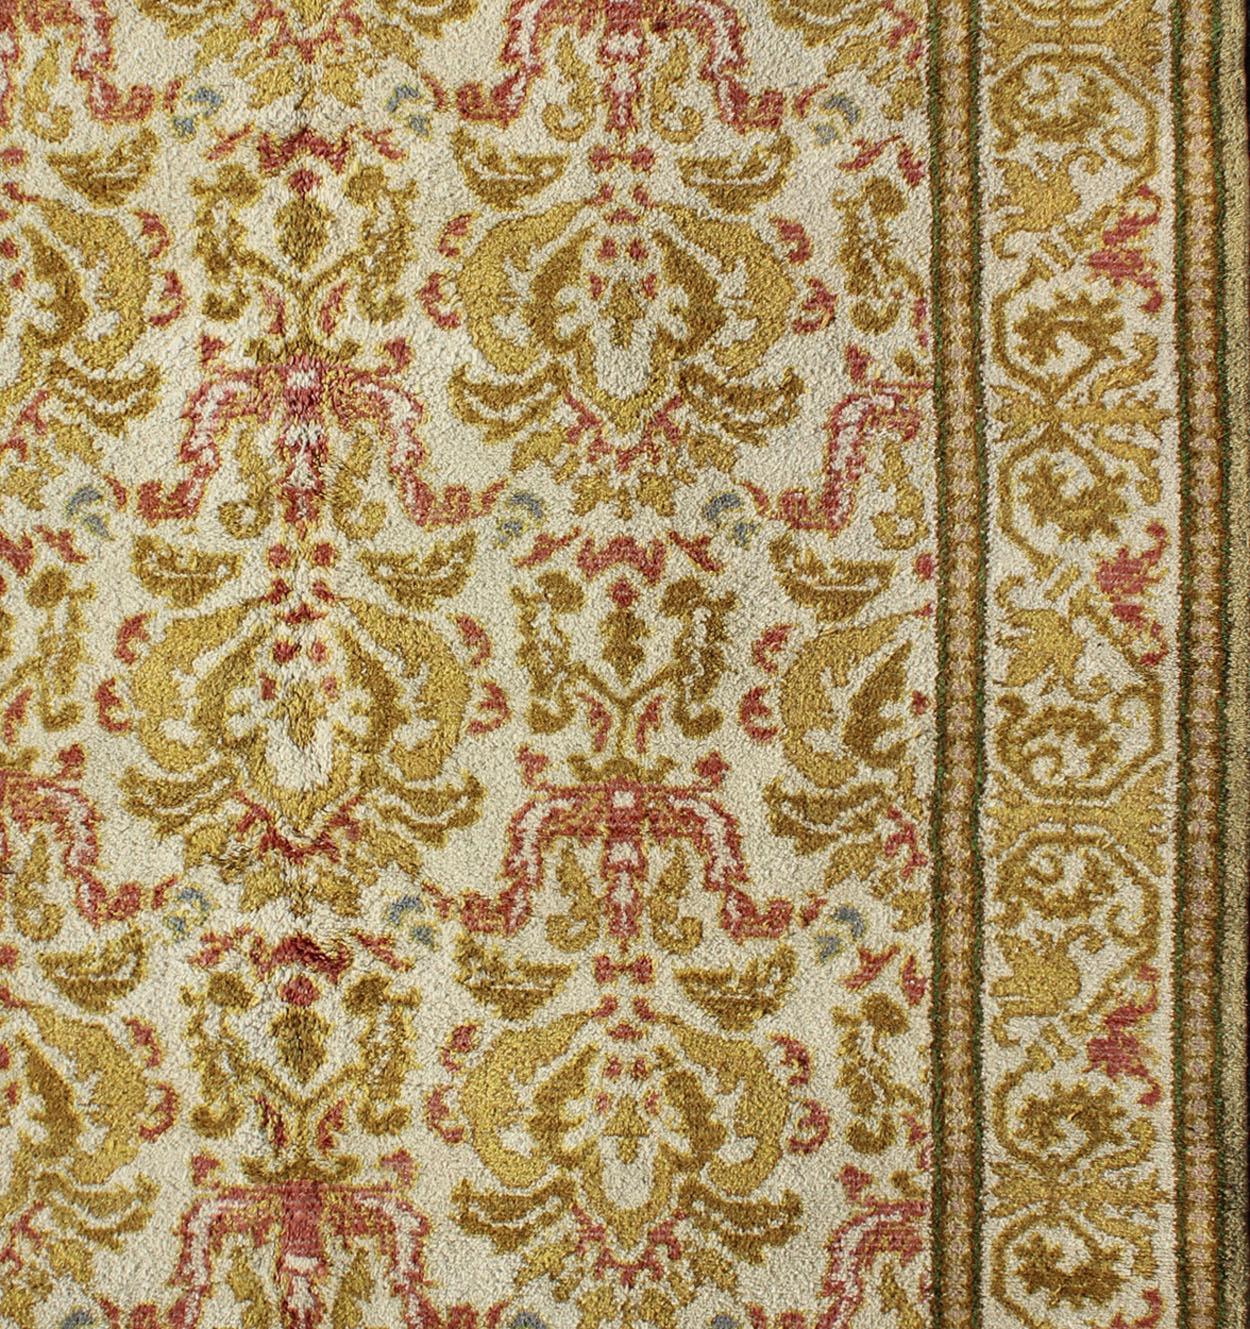 Eleganter antiker spanischer Teppich mit floralem Muster in Hellbraun, Säuregrün, Gelbgrün, Koralle und Weiß. Teppich 16-0924, Herkunftsland / Art: Spanien / Kunsthandwerk, um 1930

Dieser elegante spanische Teppich (um 1930) ist der stolze Erbe